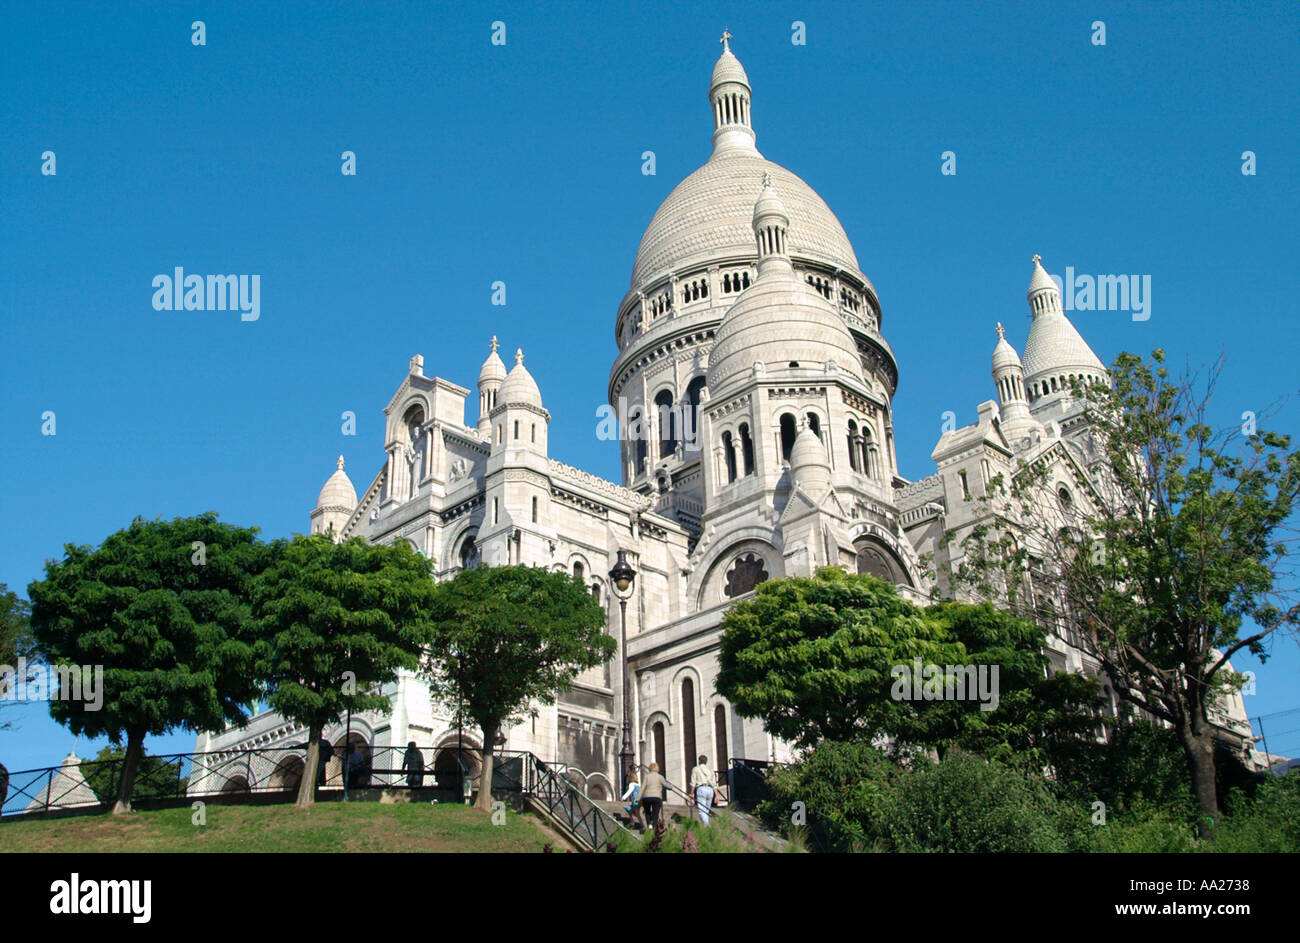 Basilique du Sacré-Cœur, Montmartre, Paris, France Stock Photo